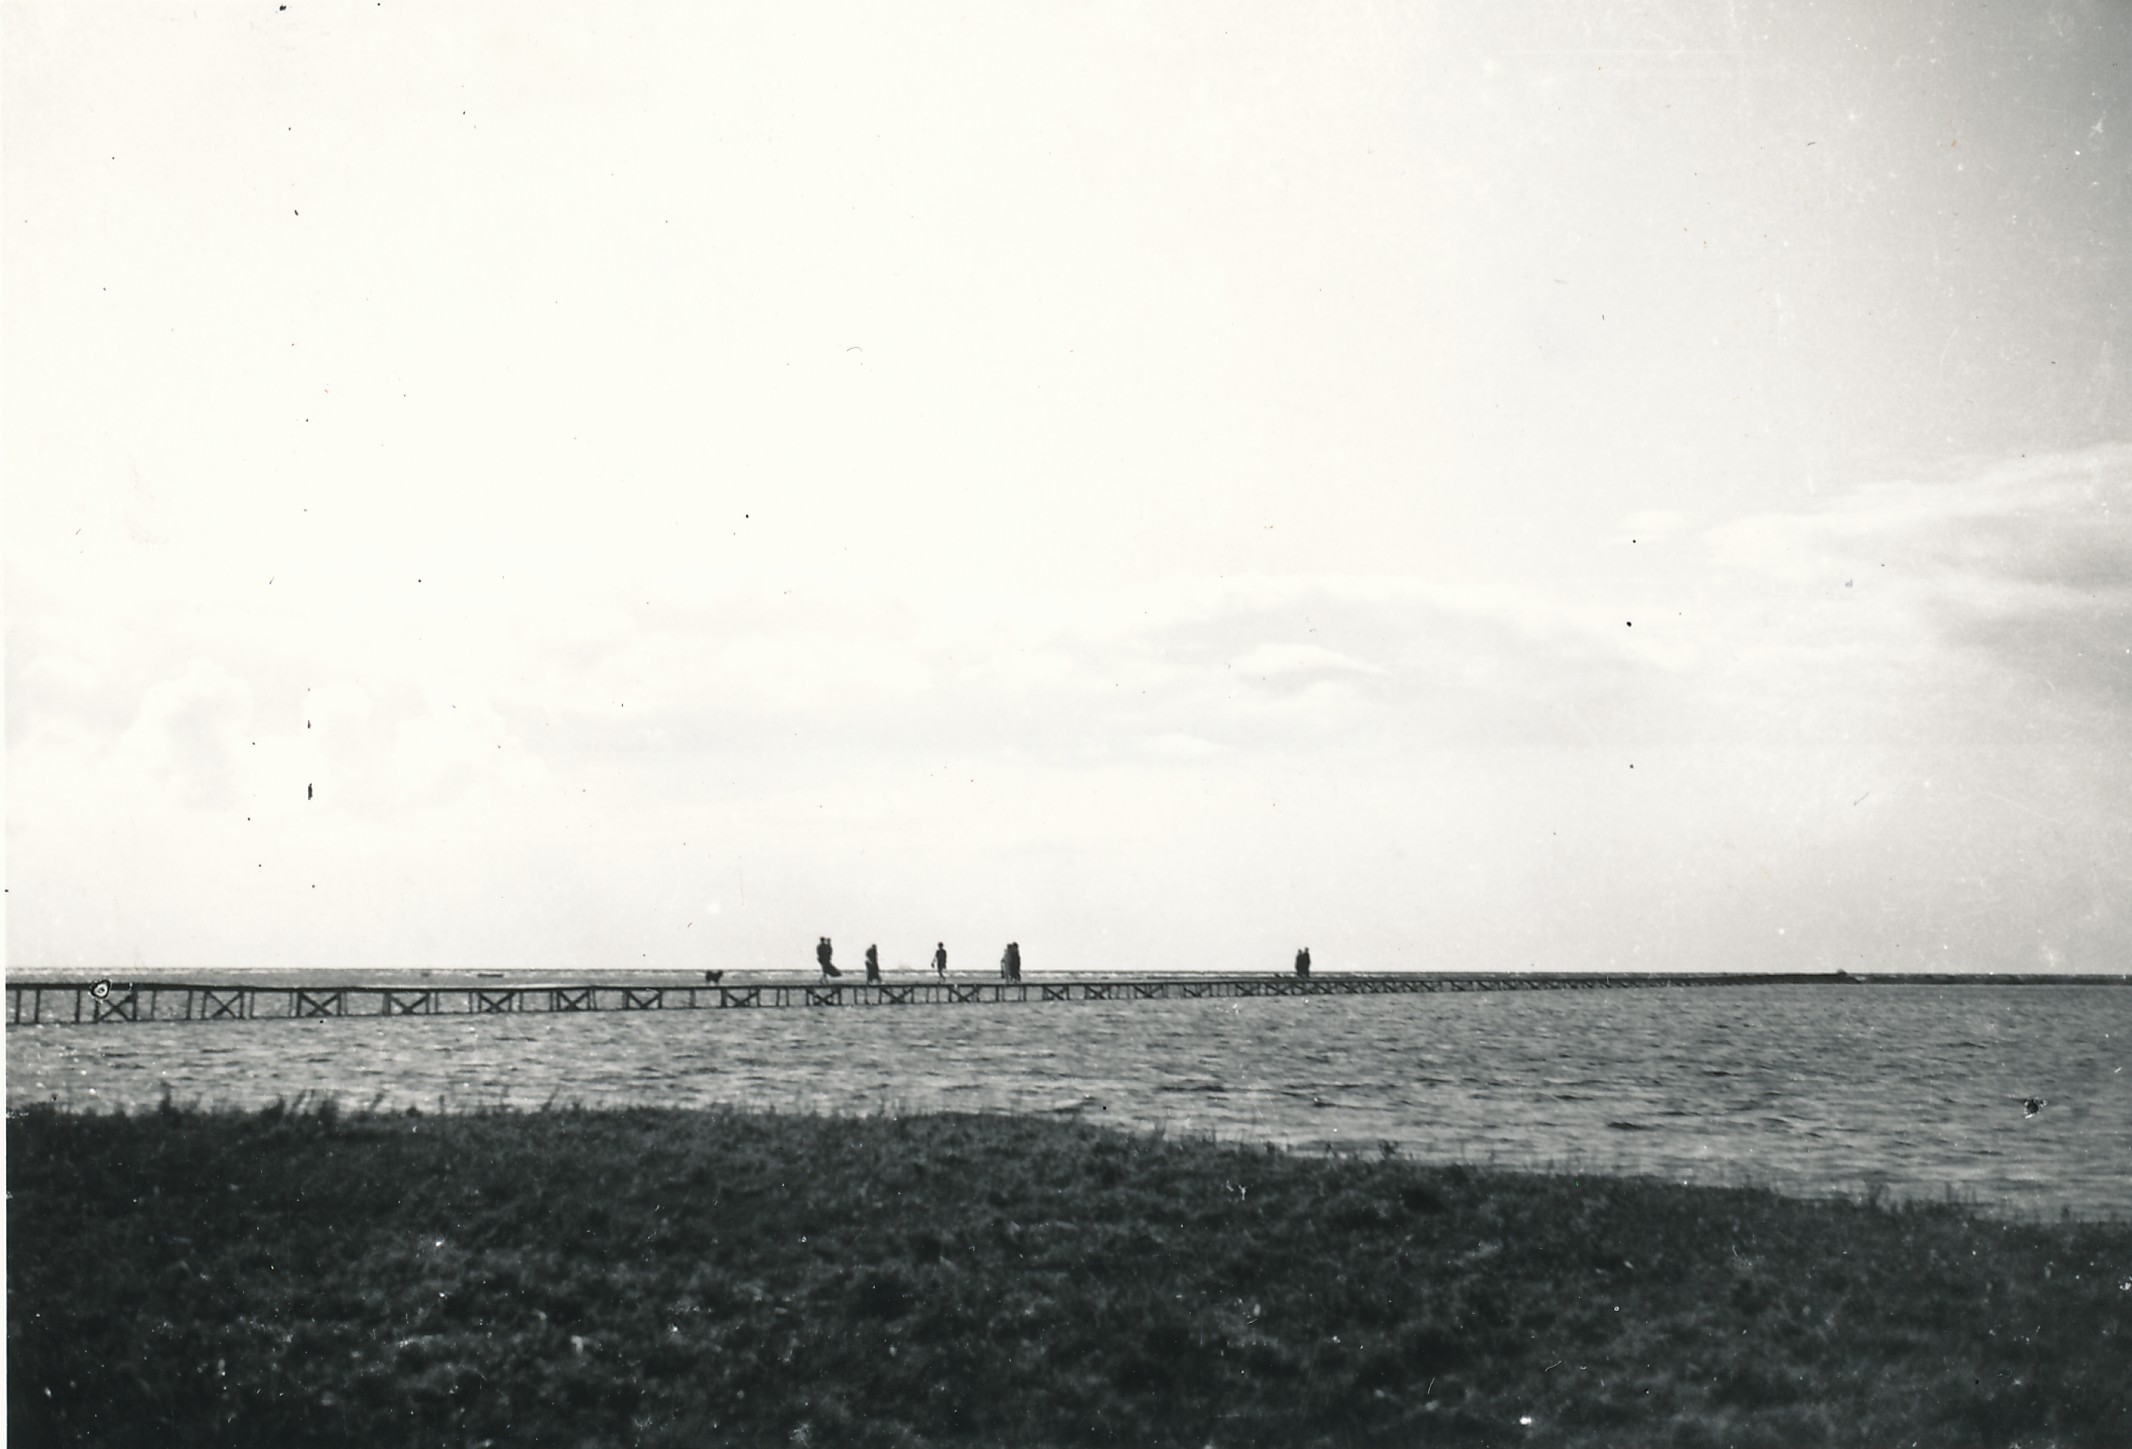 Badegæster på Korevlens bro - 1930'erne (B6104)